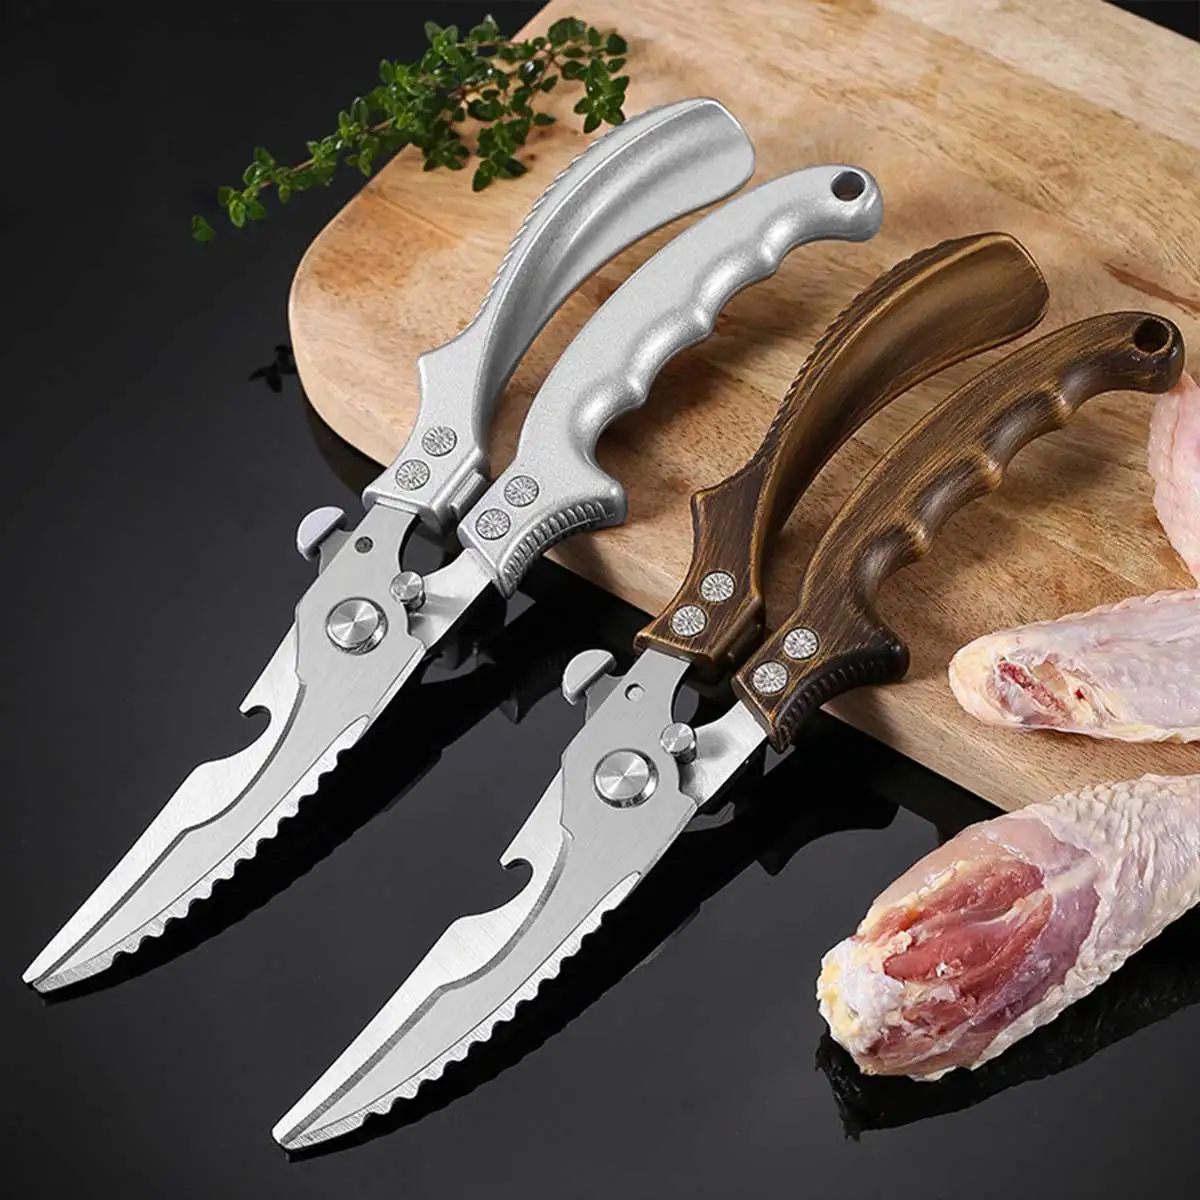 

L Kitchen Scissors Stainless Steel Kitchen Shears Heavy Duty Chicken Bone Cutting Shears Sharp Utility Scissors Meat Scissors